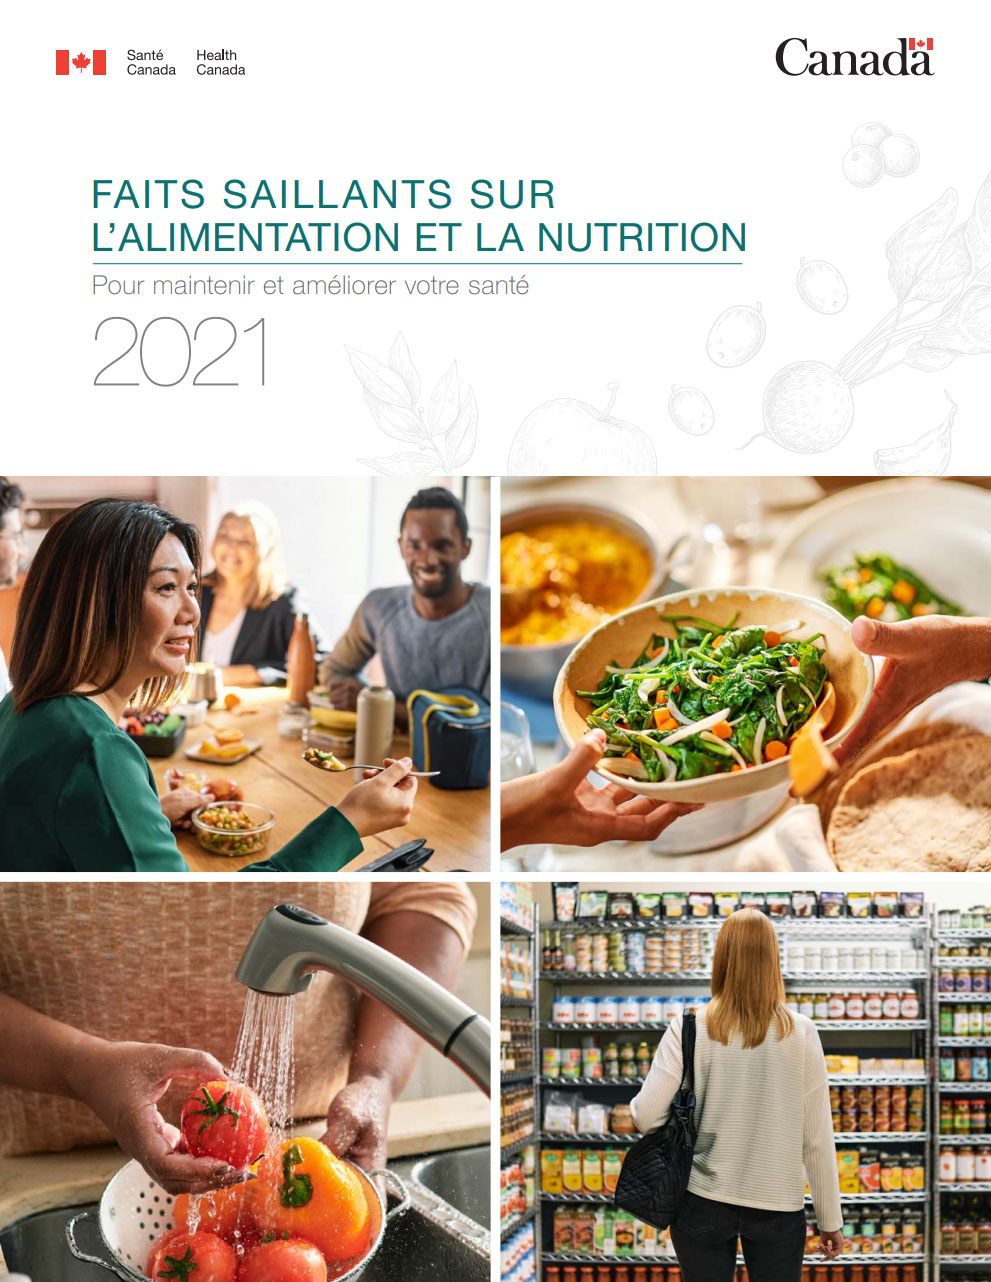 Faits saillants sur l'alimentation et la nutrition 2021